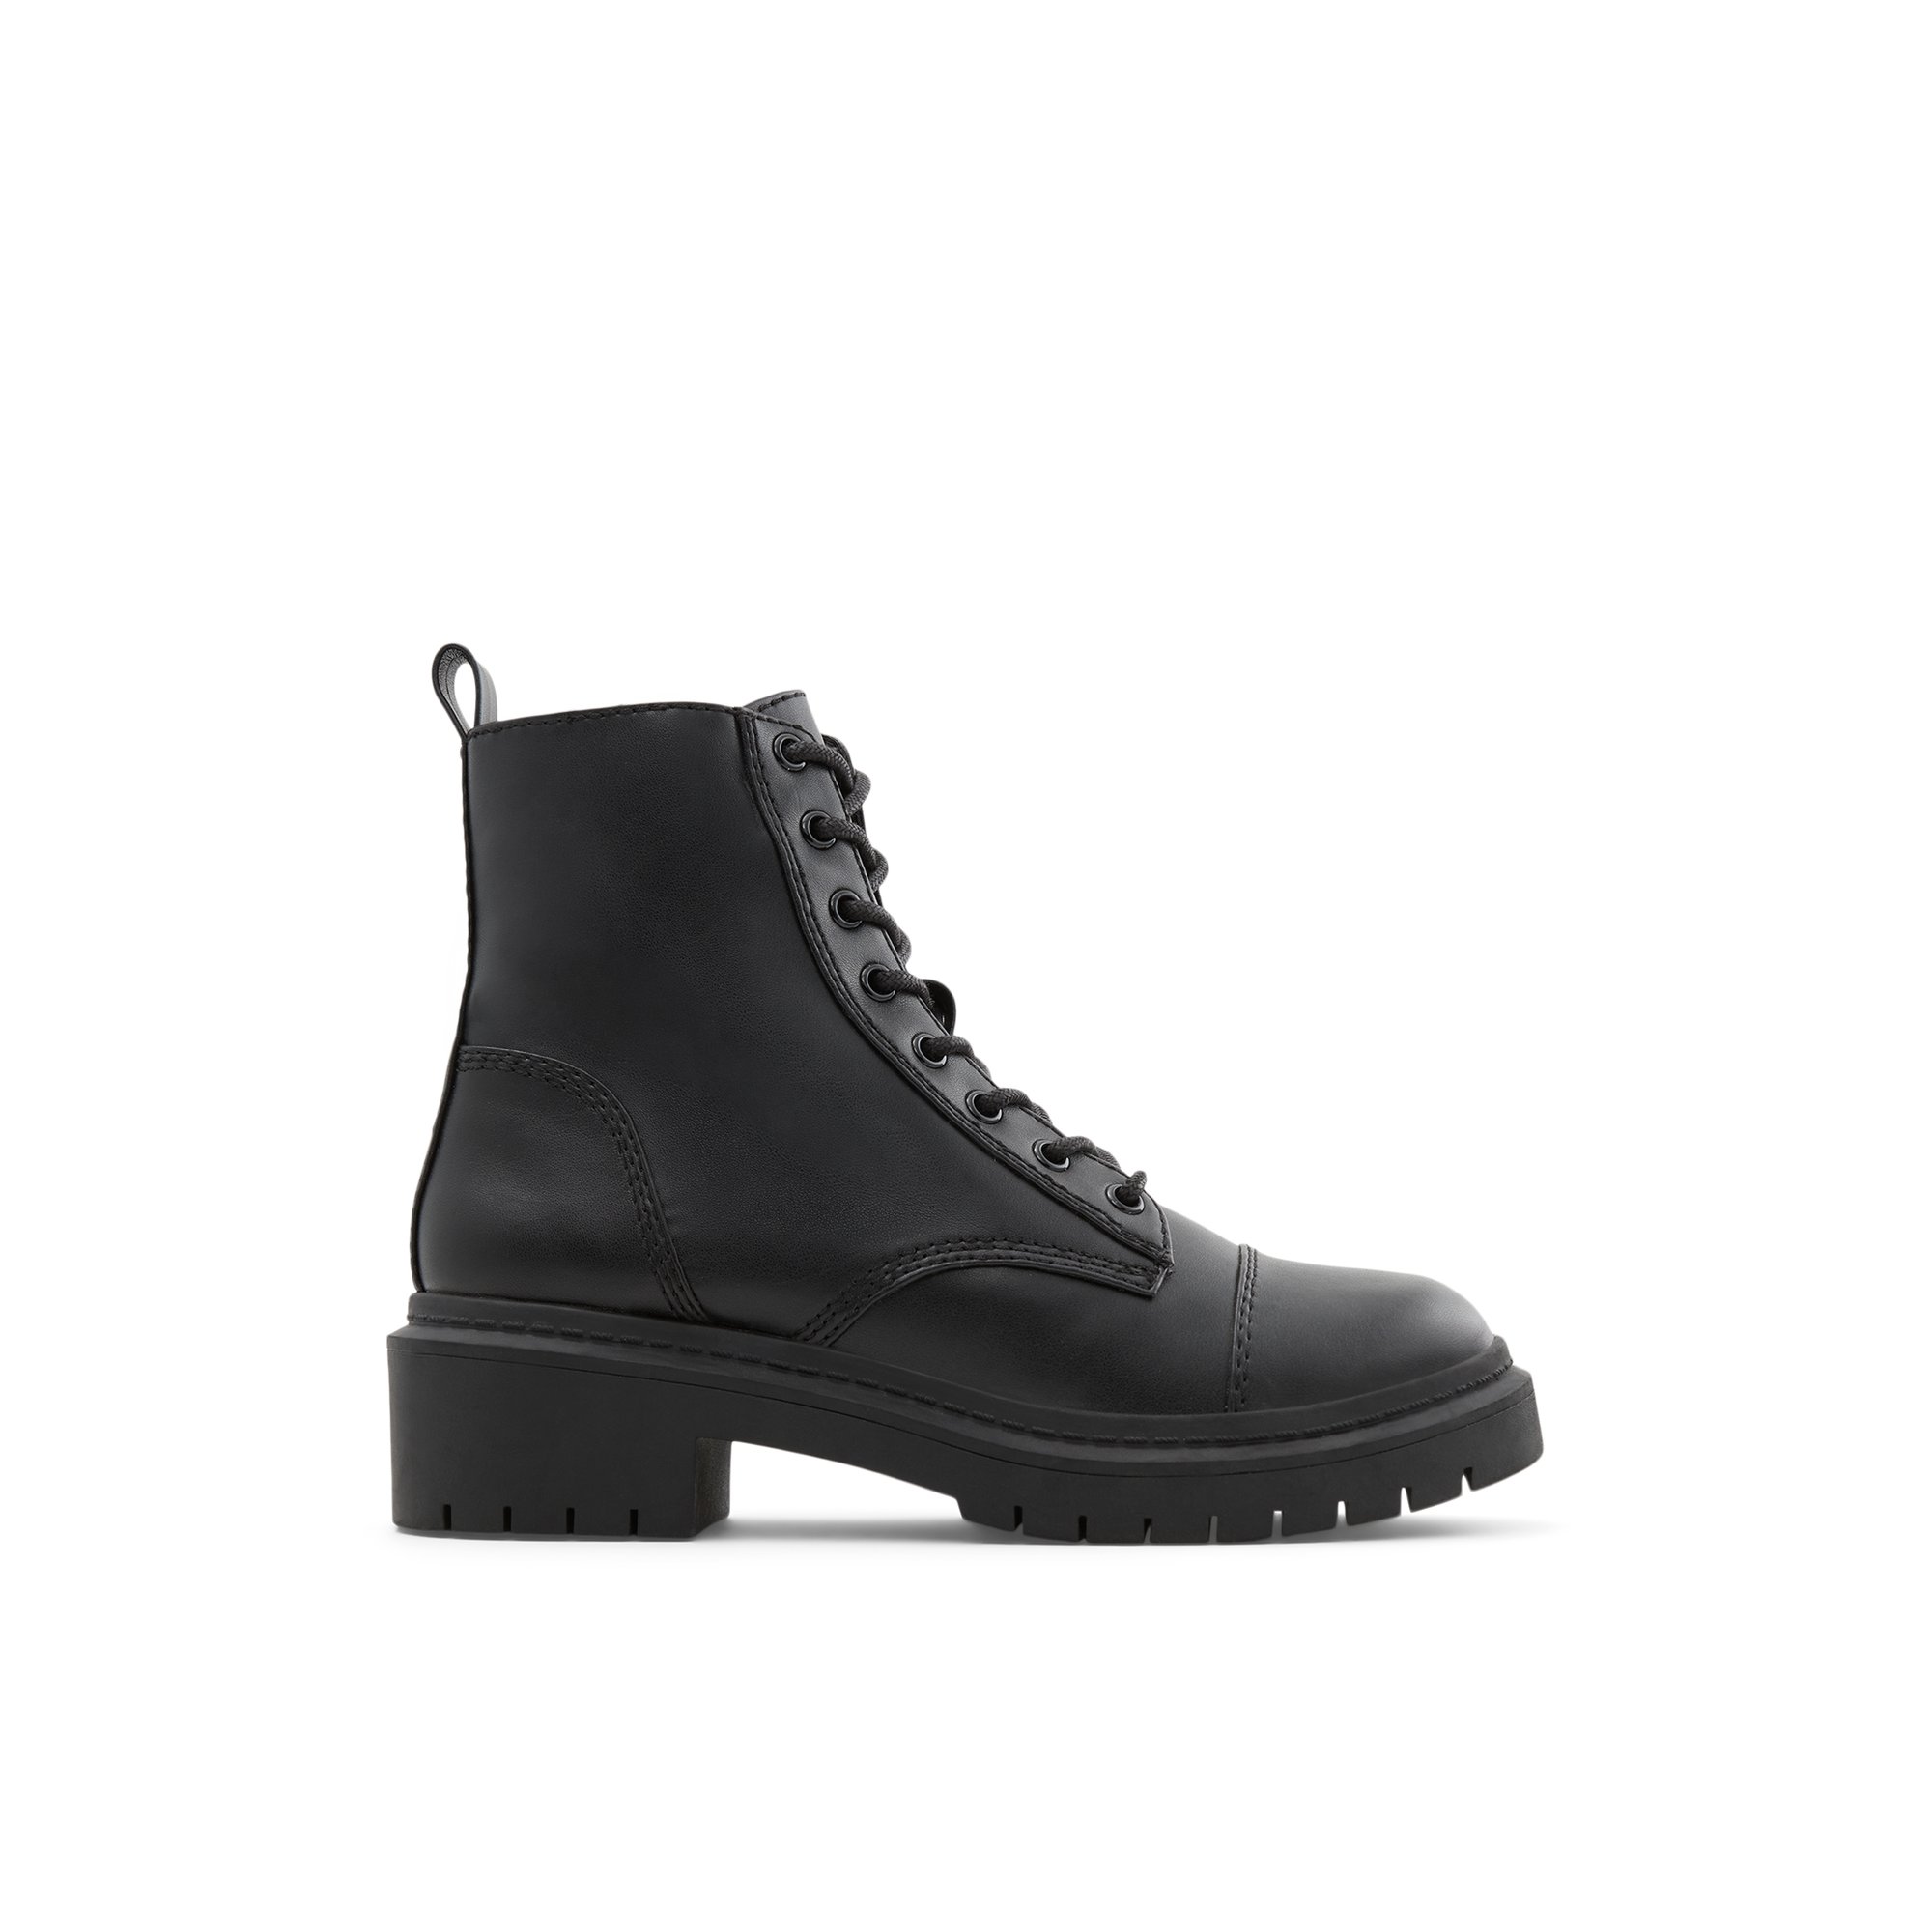 ALDO Goer - Women's Boots Winter - Black